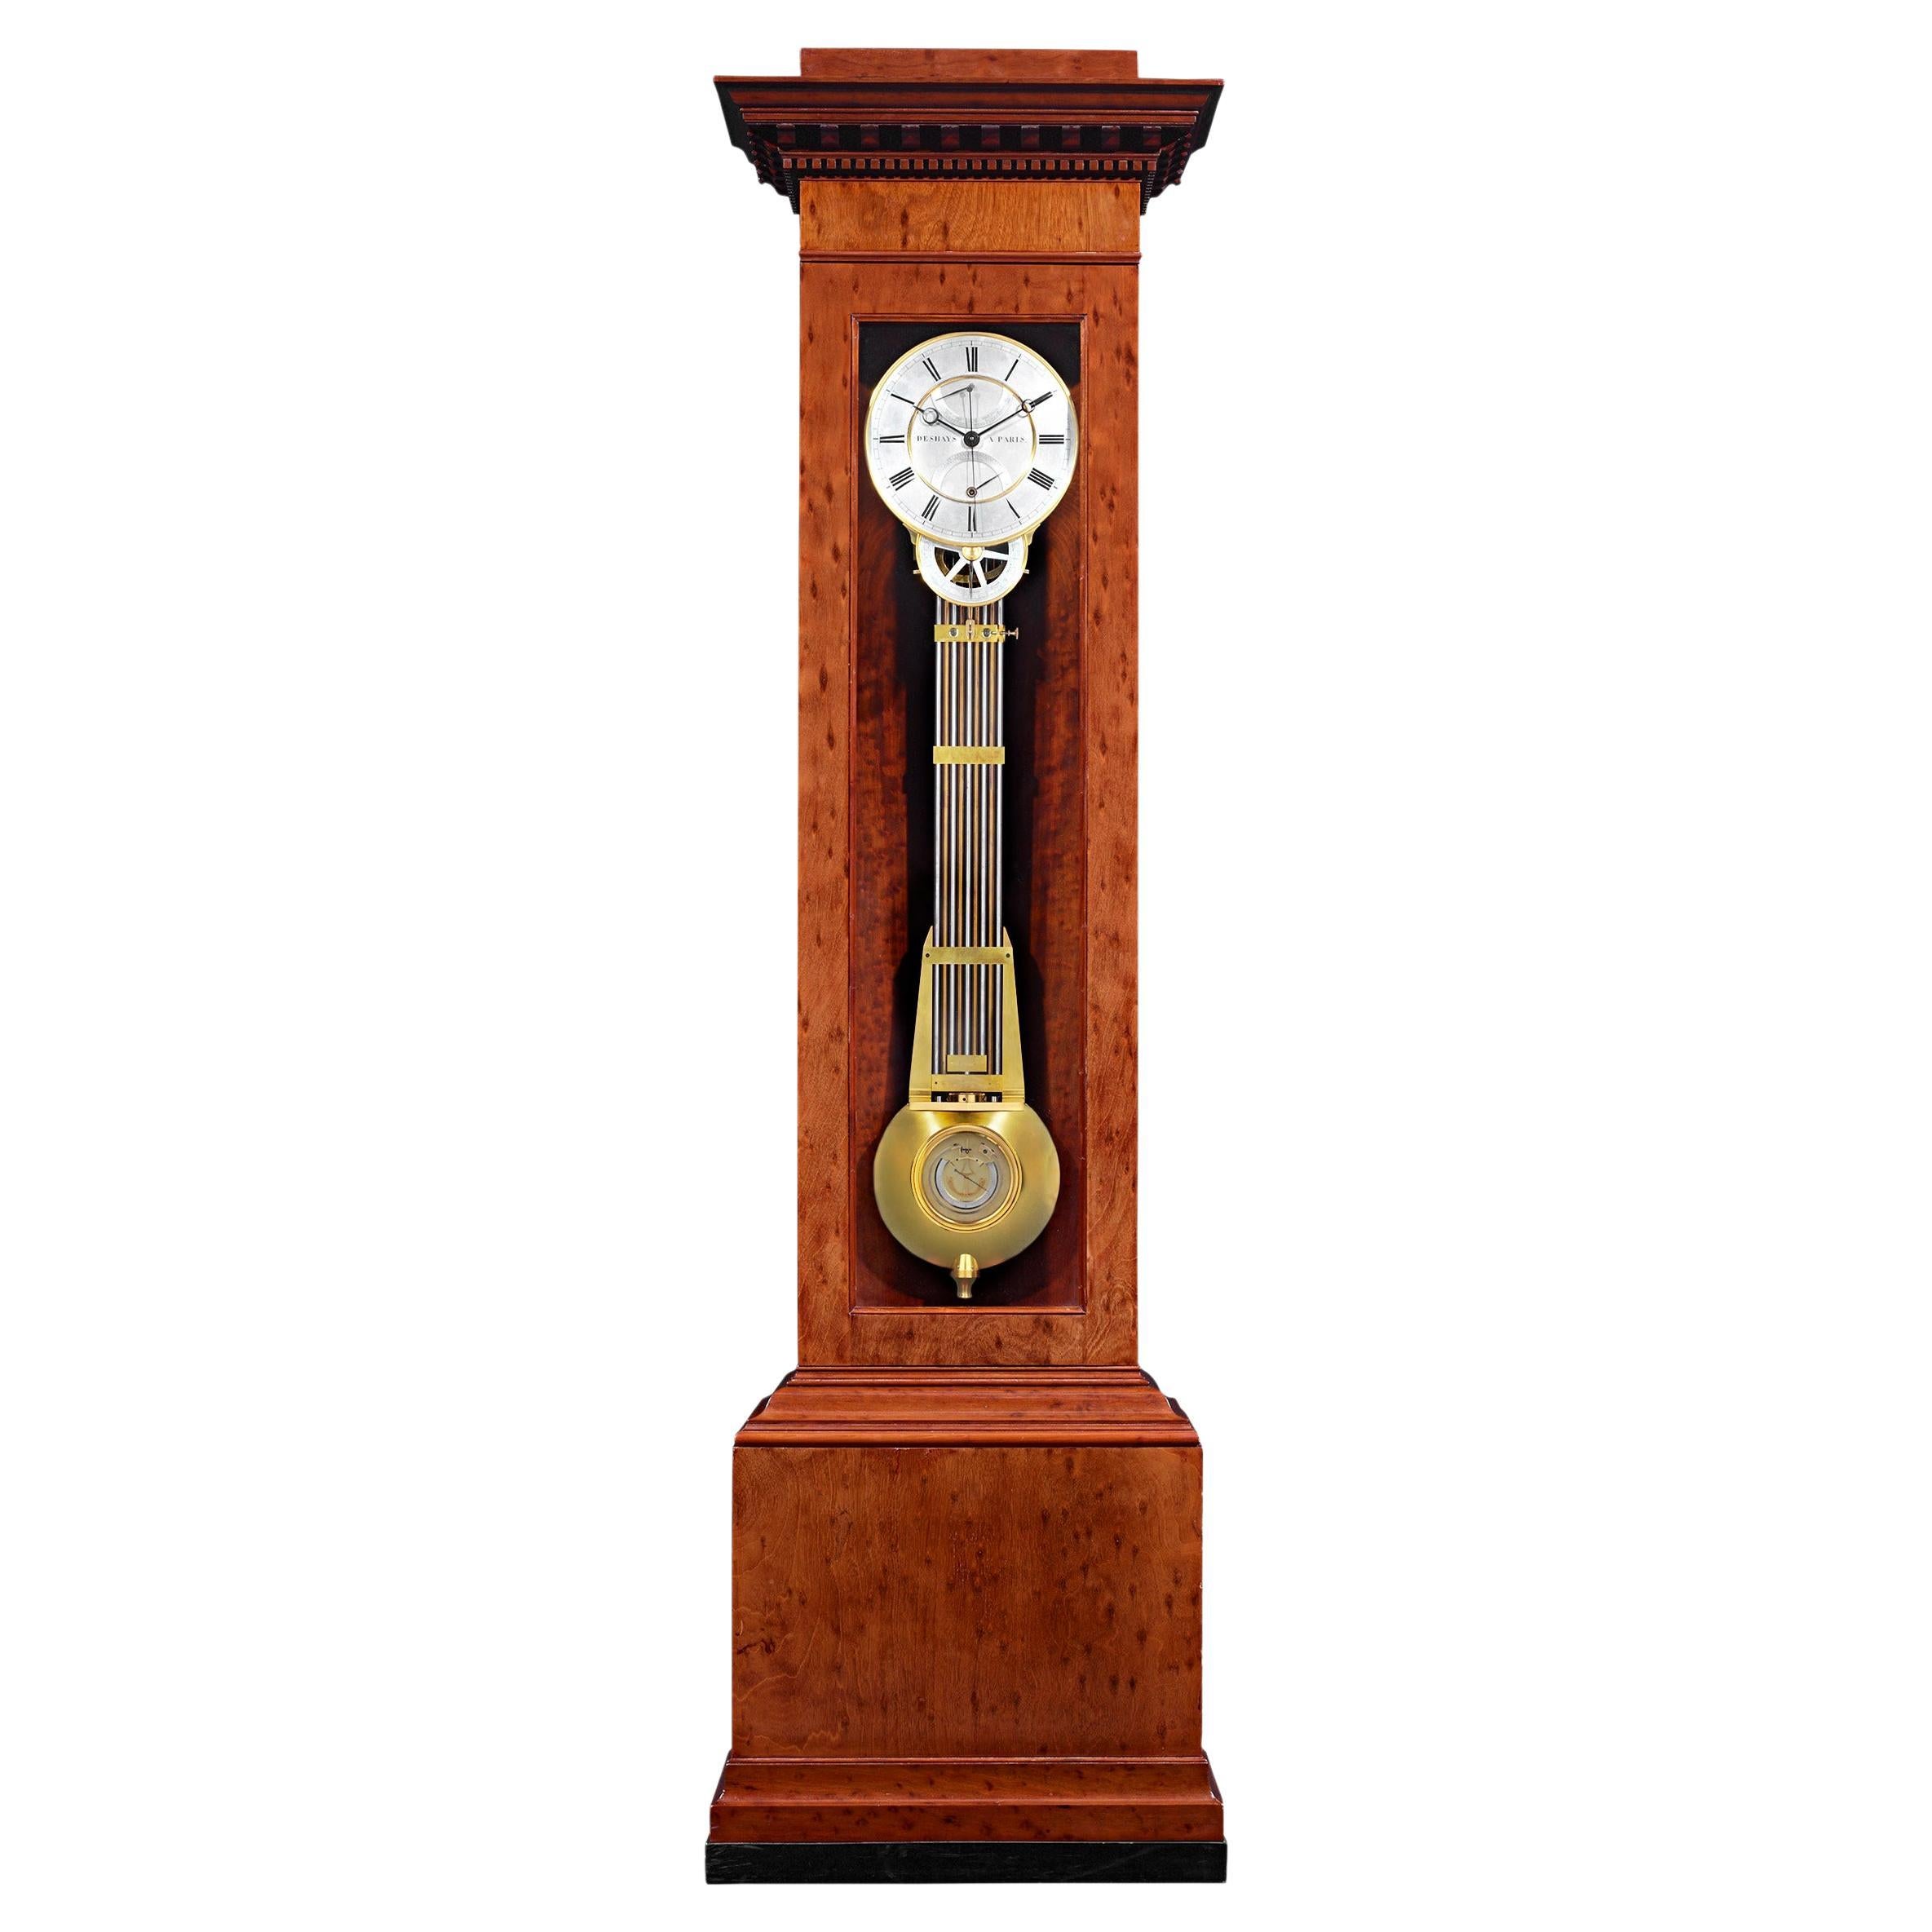 Horloge régulateur Month-Going de Deshays Paris